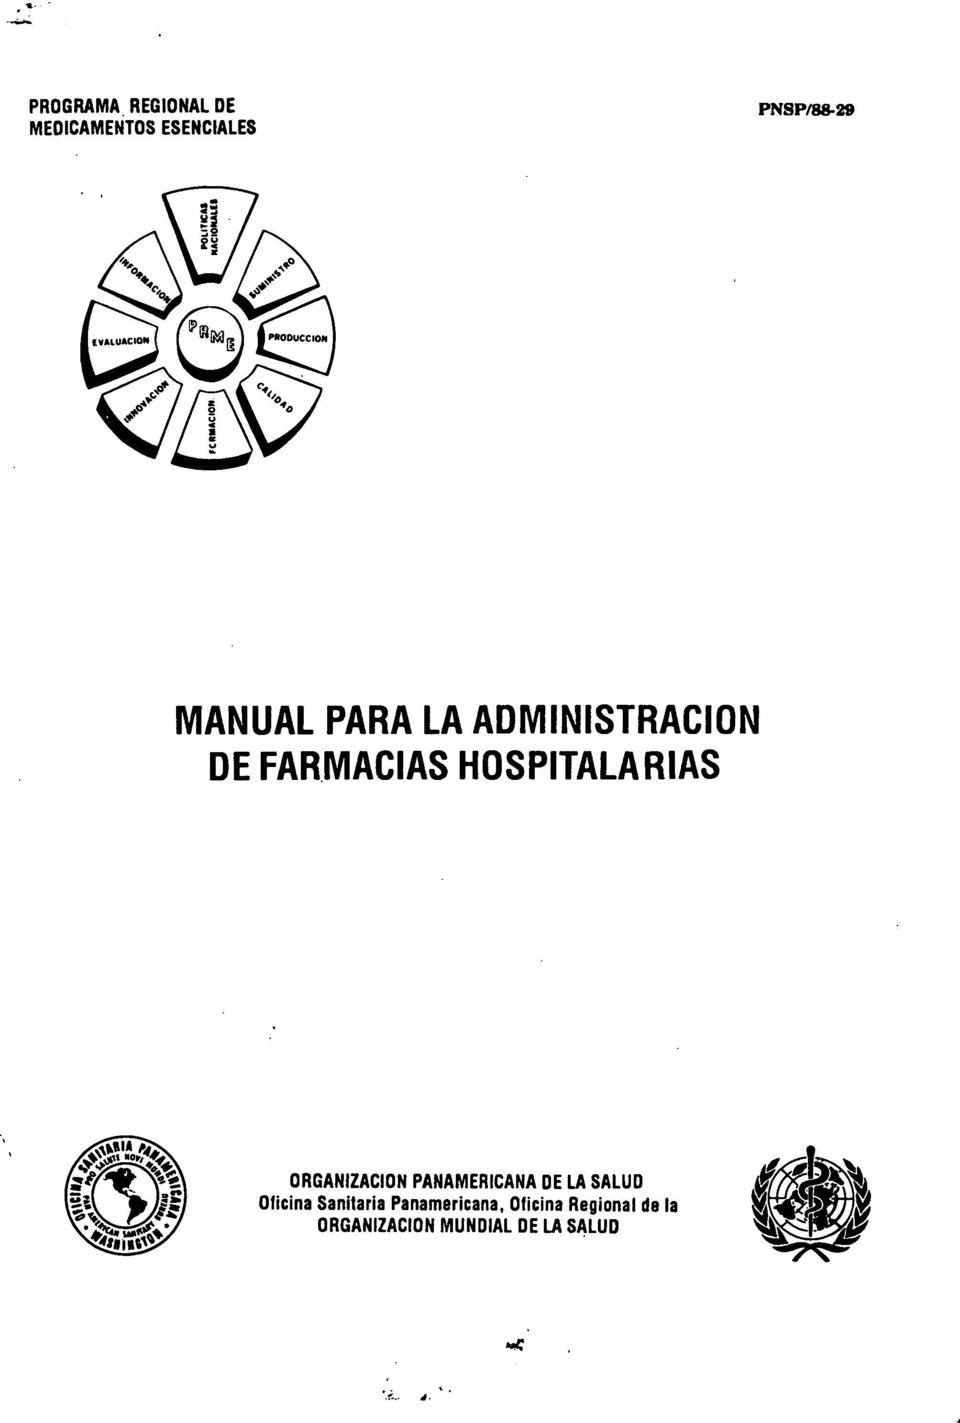 ORGANIZACIÓN PANAMERICANA DE LA SALUD Oficina Sanitaria